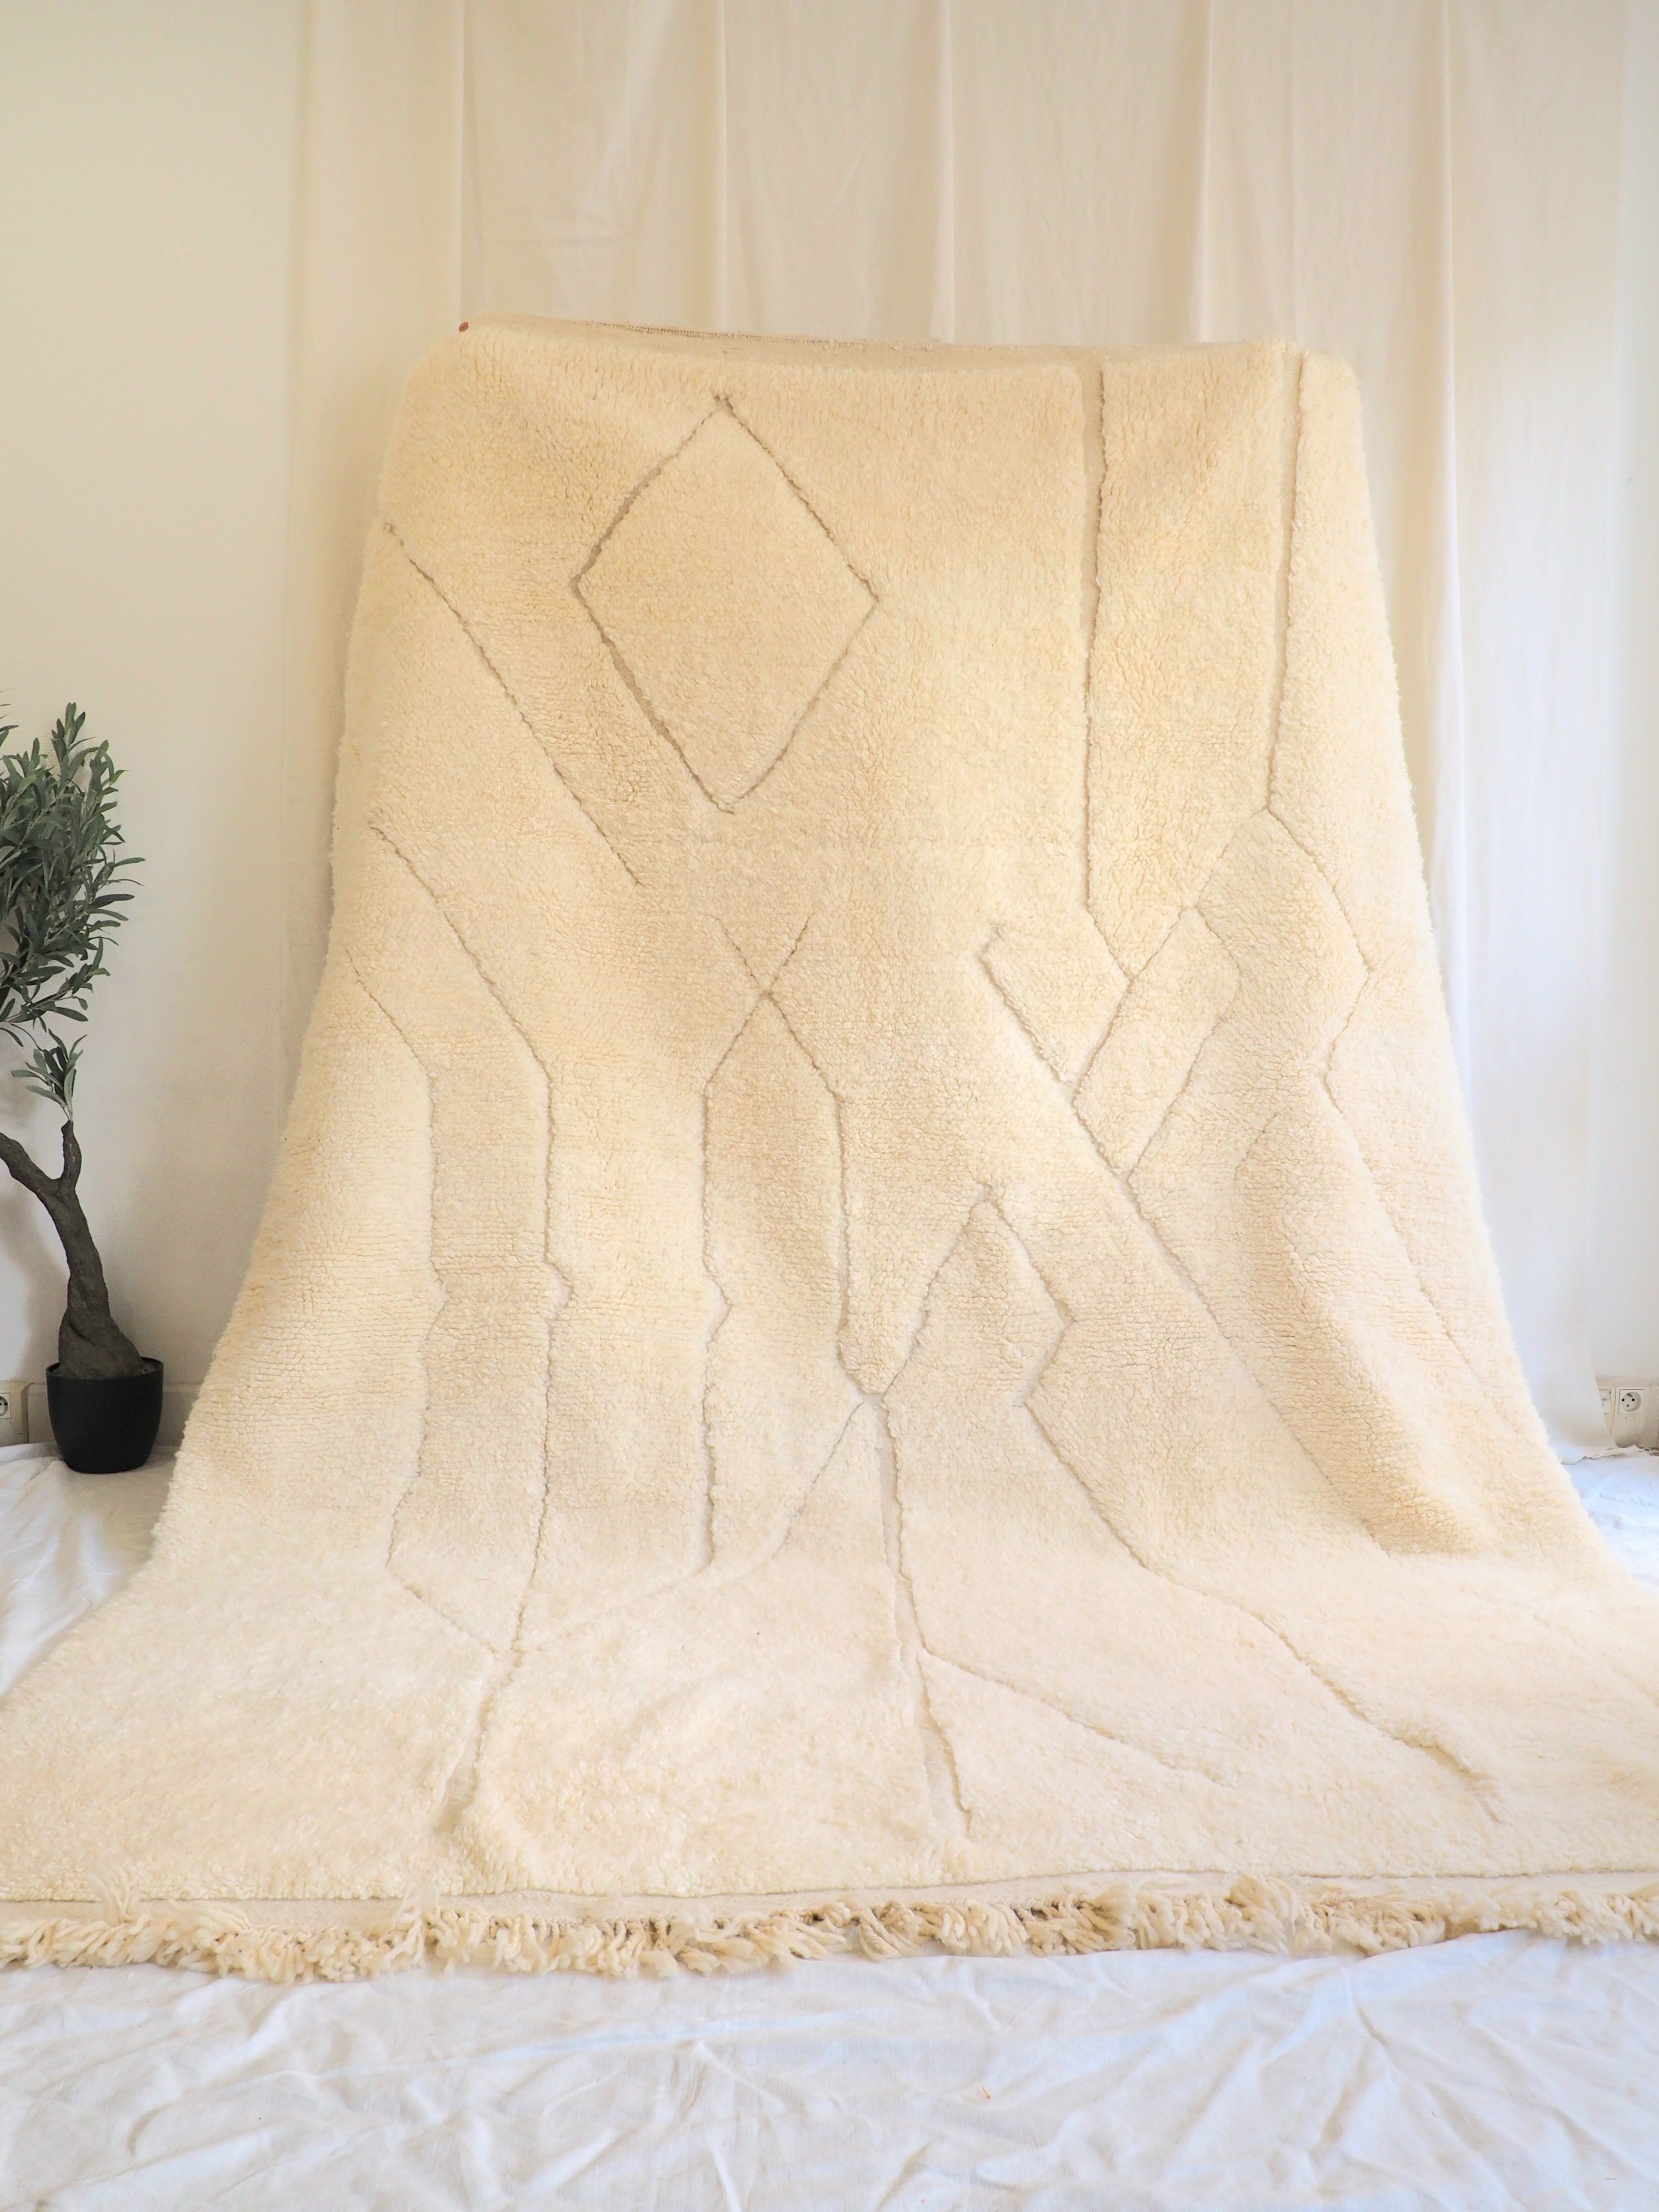 Vrai tapis Berbère Marocain fait main couleur blanc crème 100% pure laine de mouton